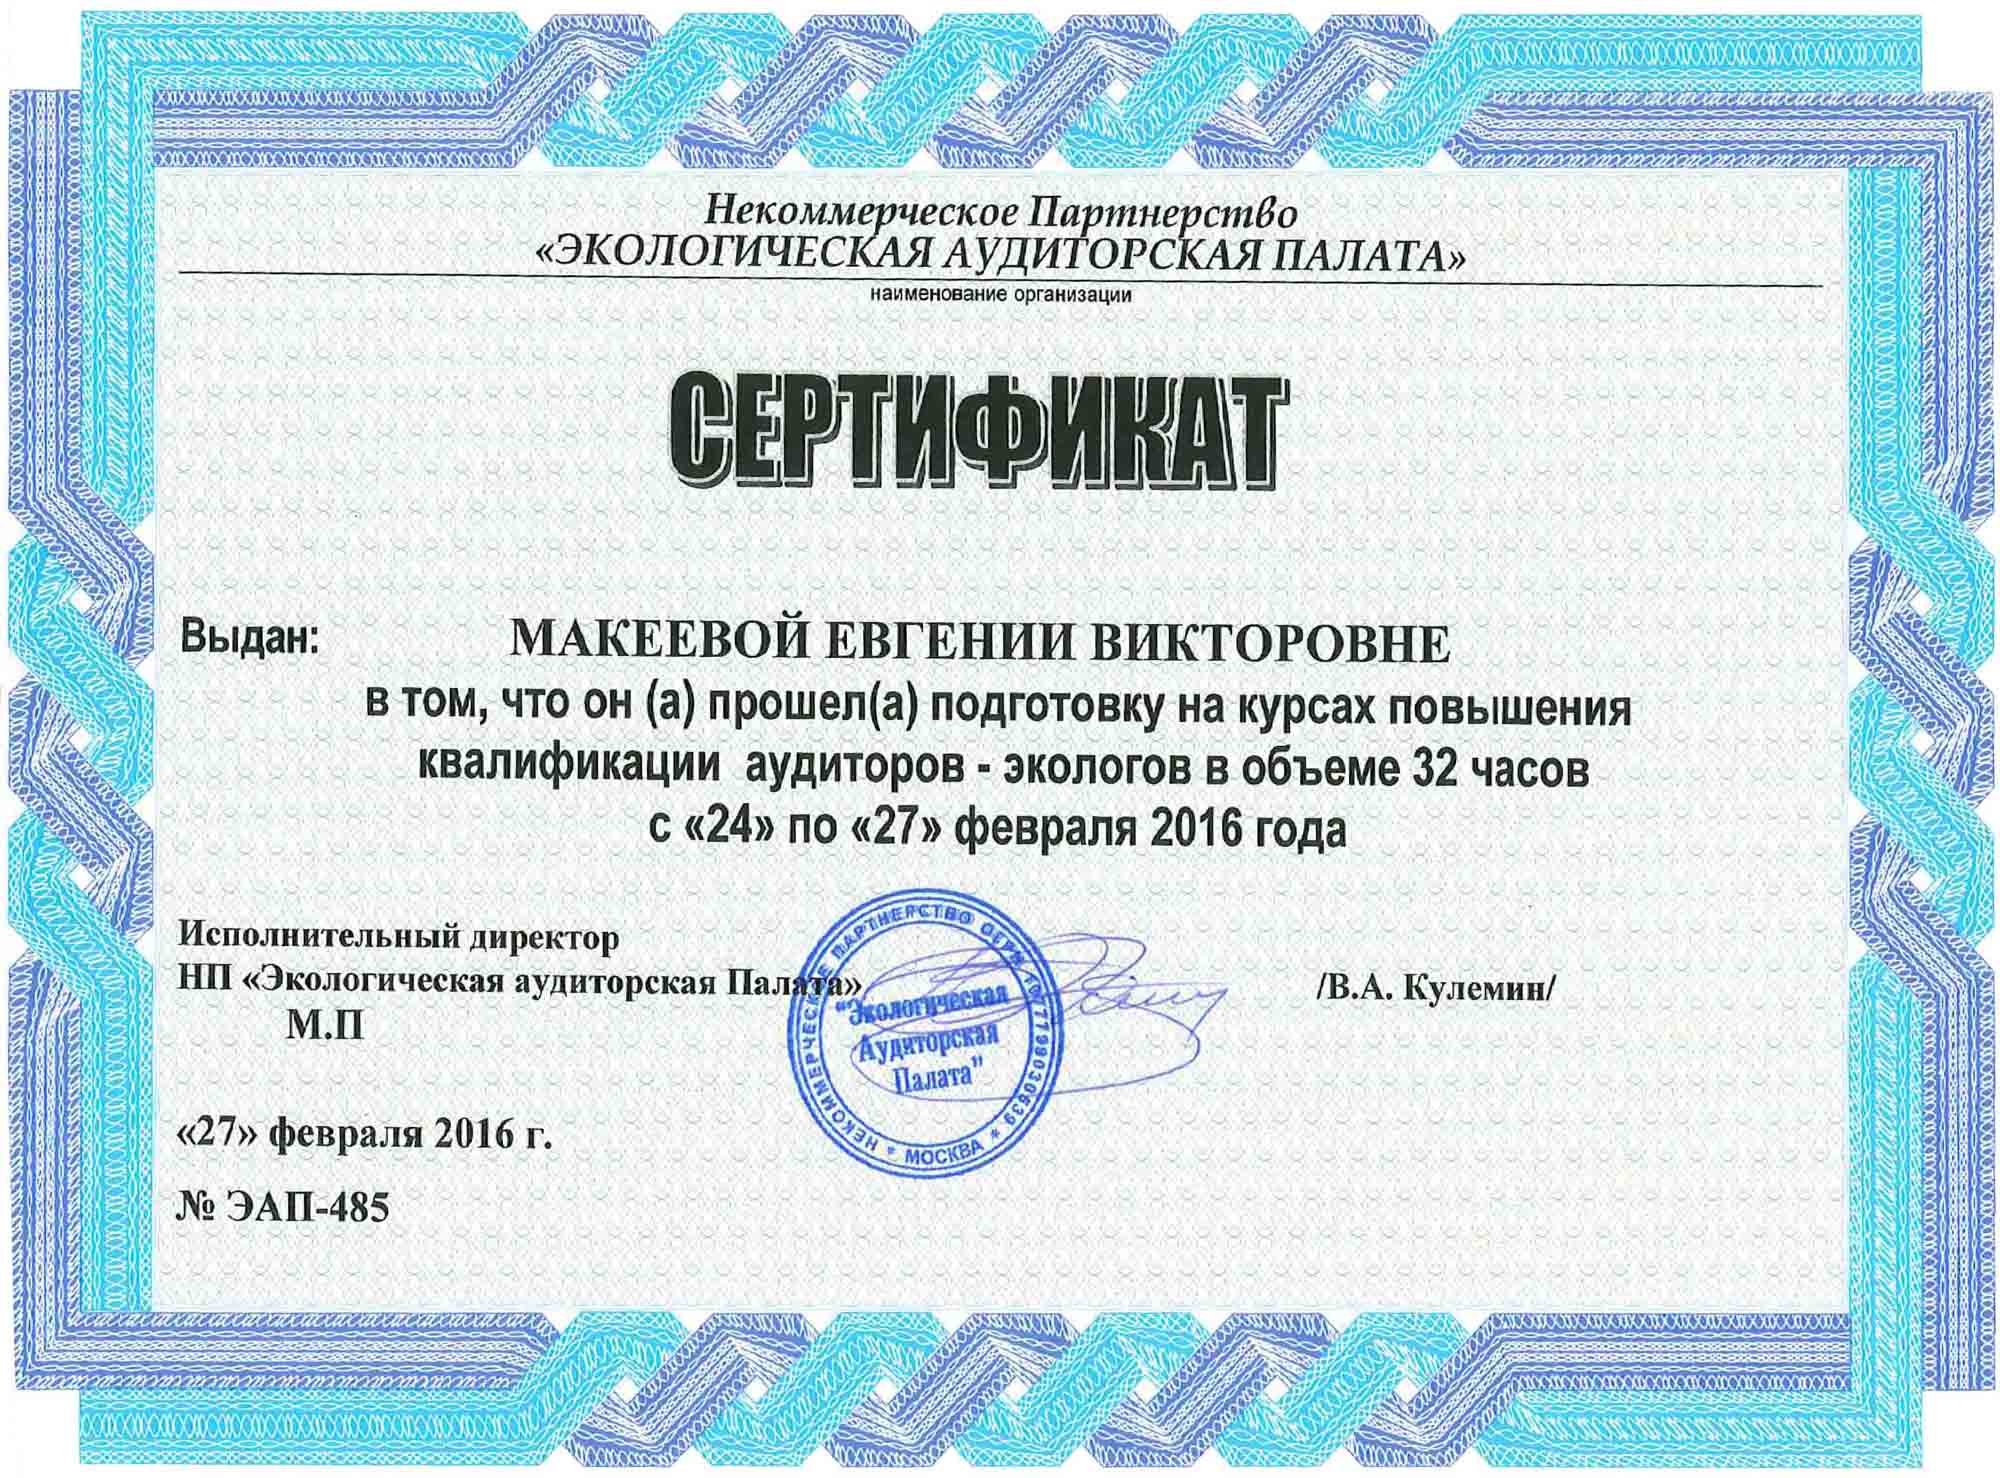 Сертификат подготовки на курсах повышения квалификации аудиторов-экологов